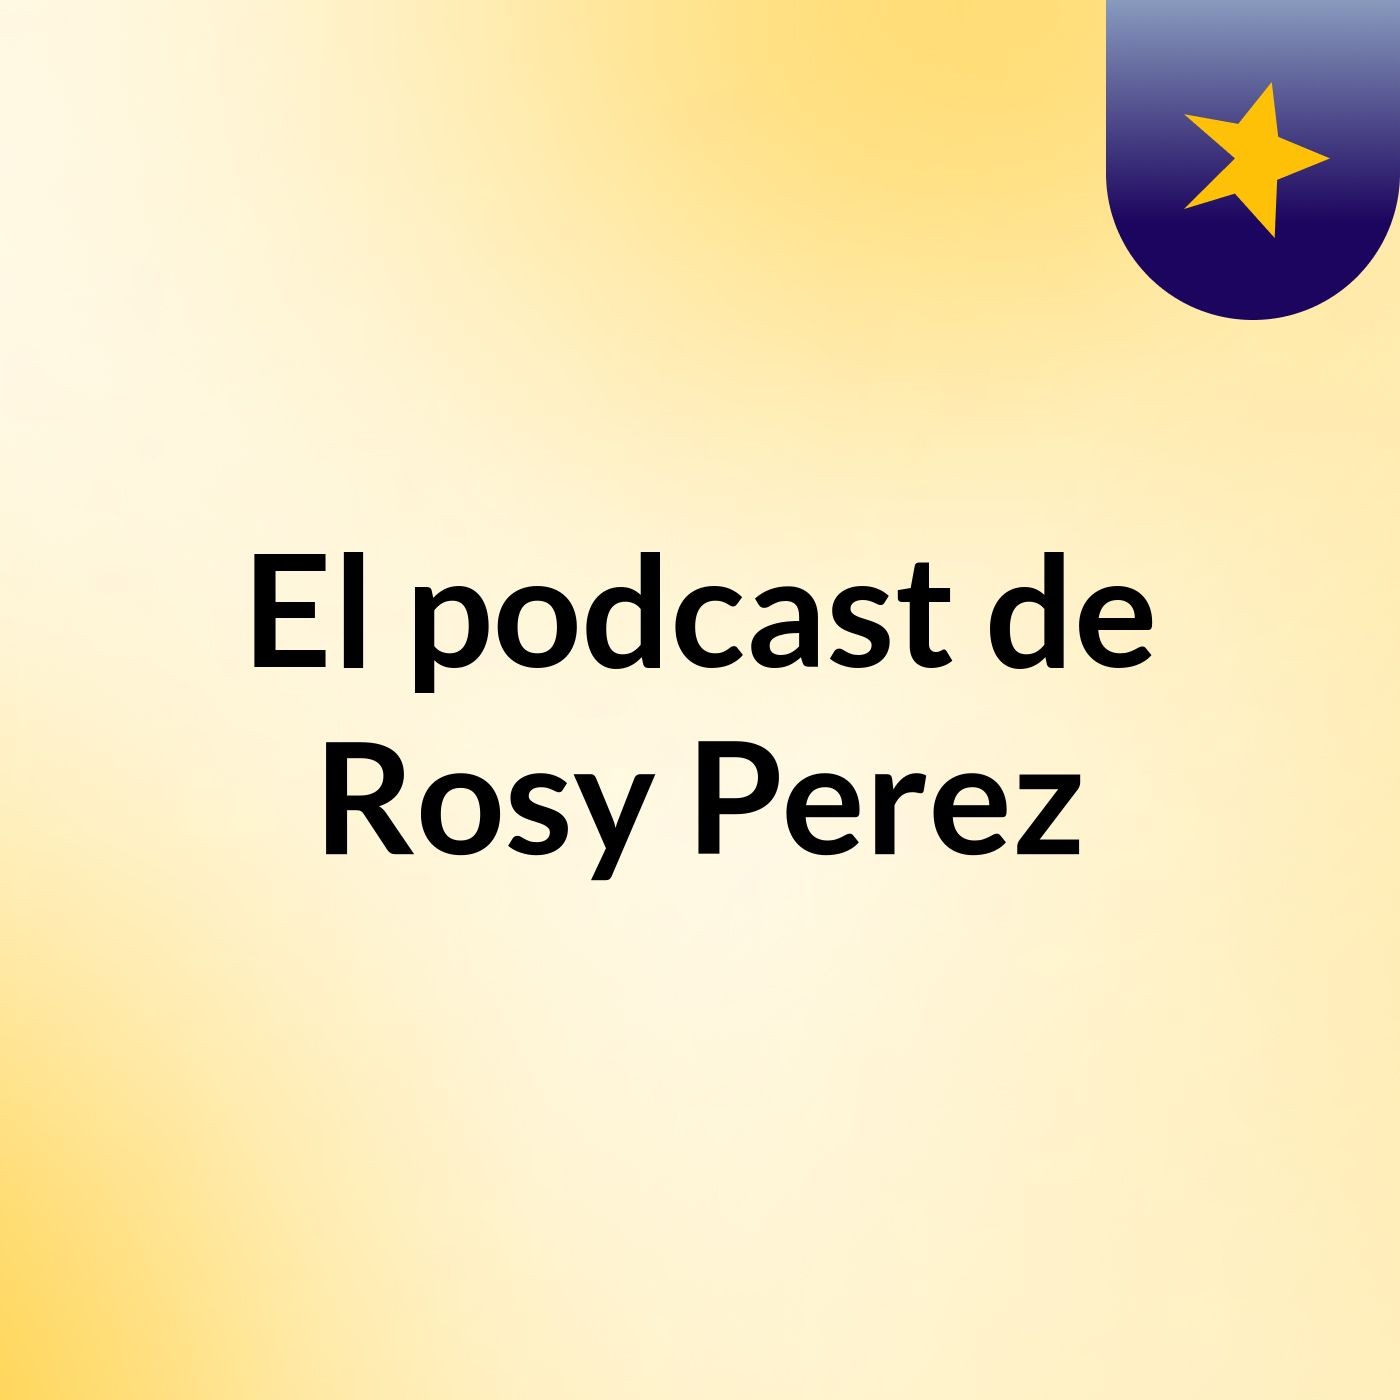 El podcast de Rosy Perez